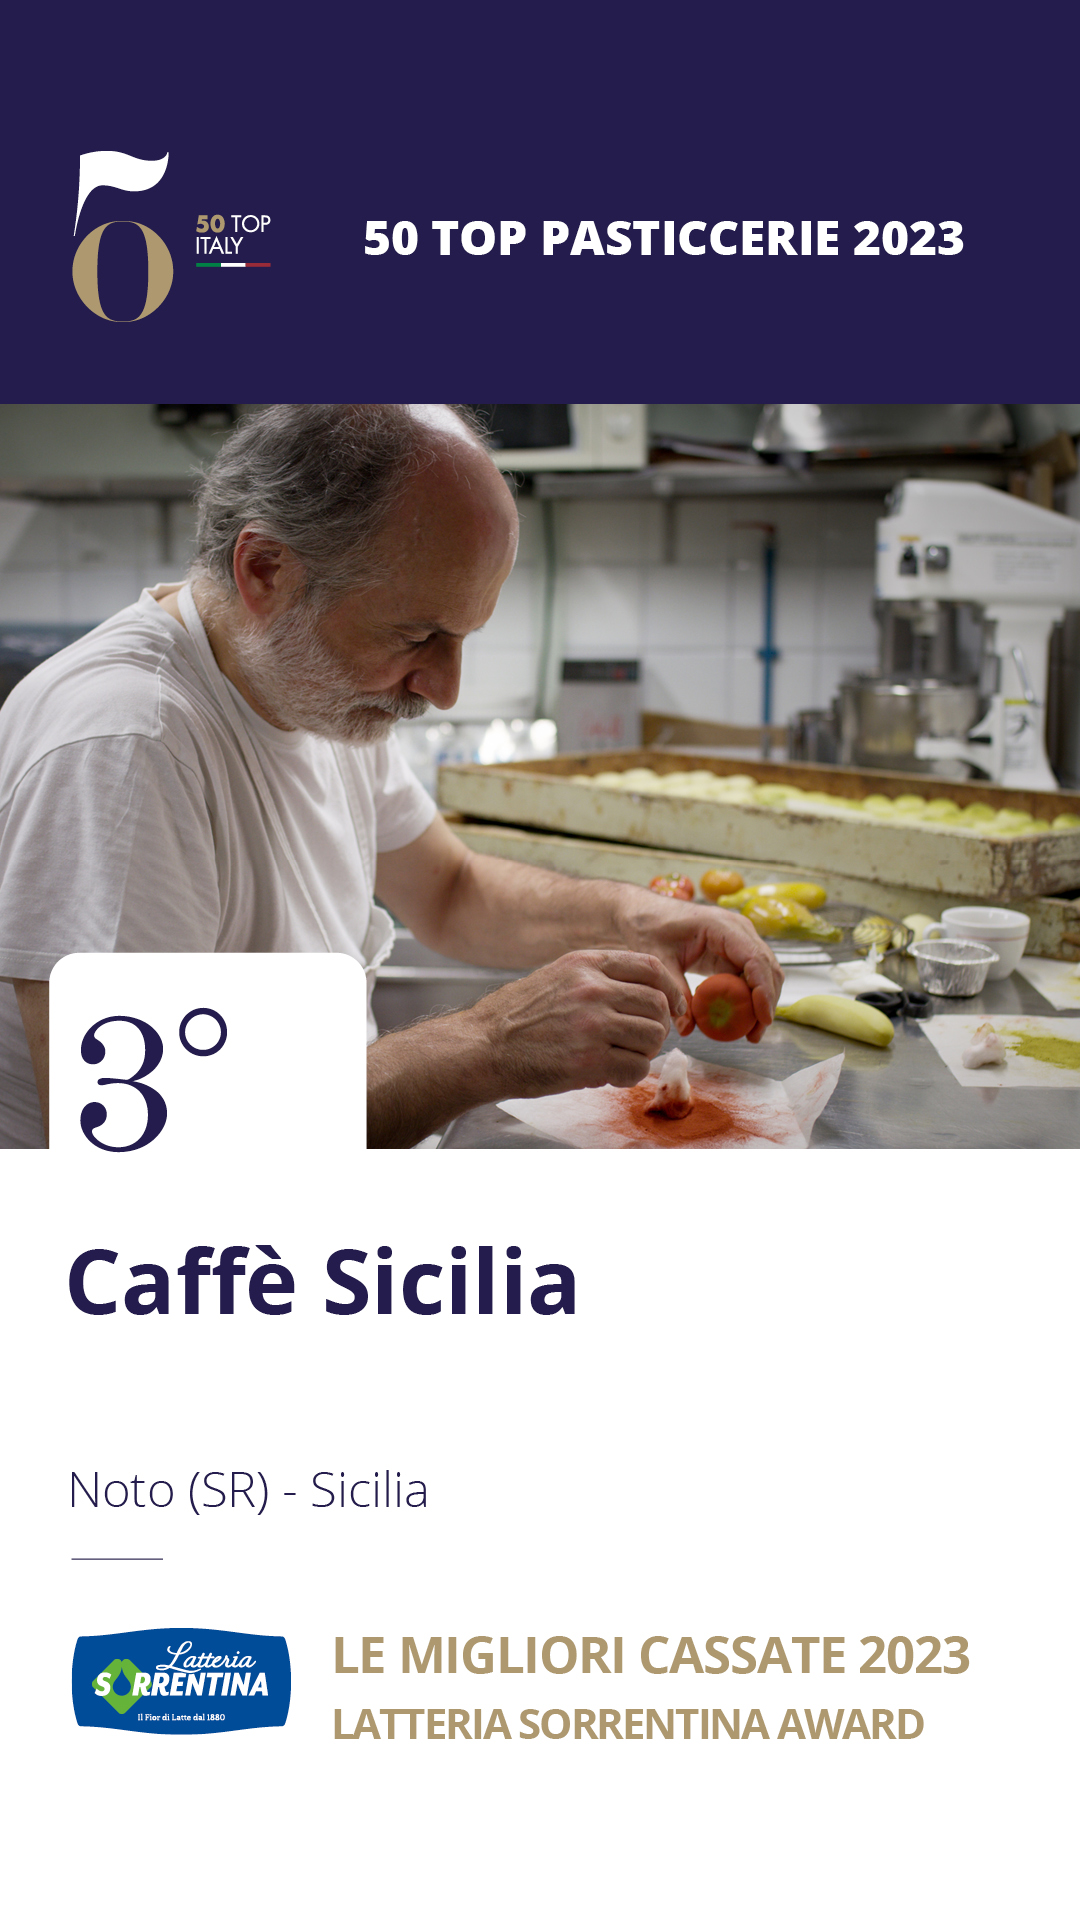 3 - Caffè Sicilia - Noto (SR), Sicilia